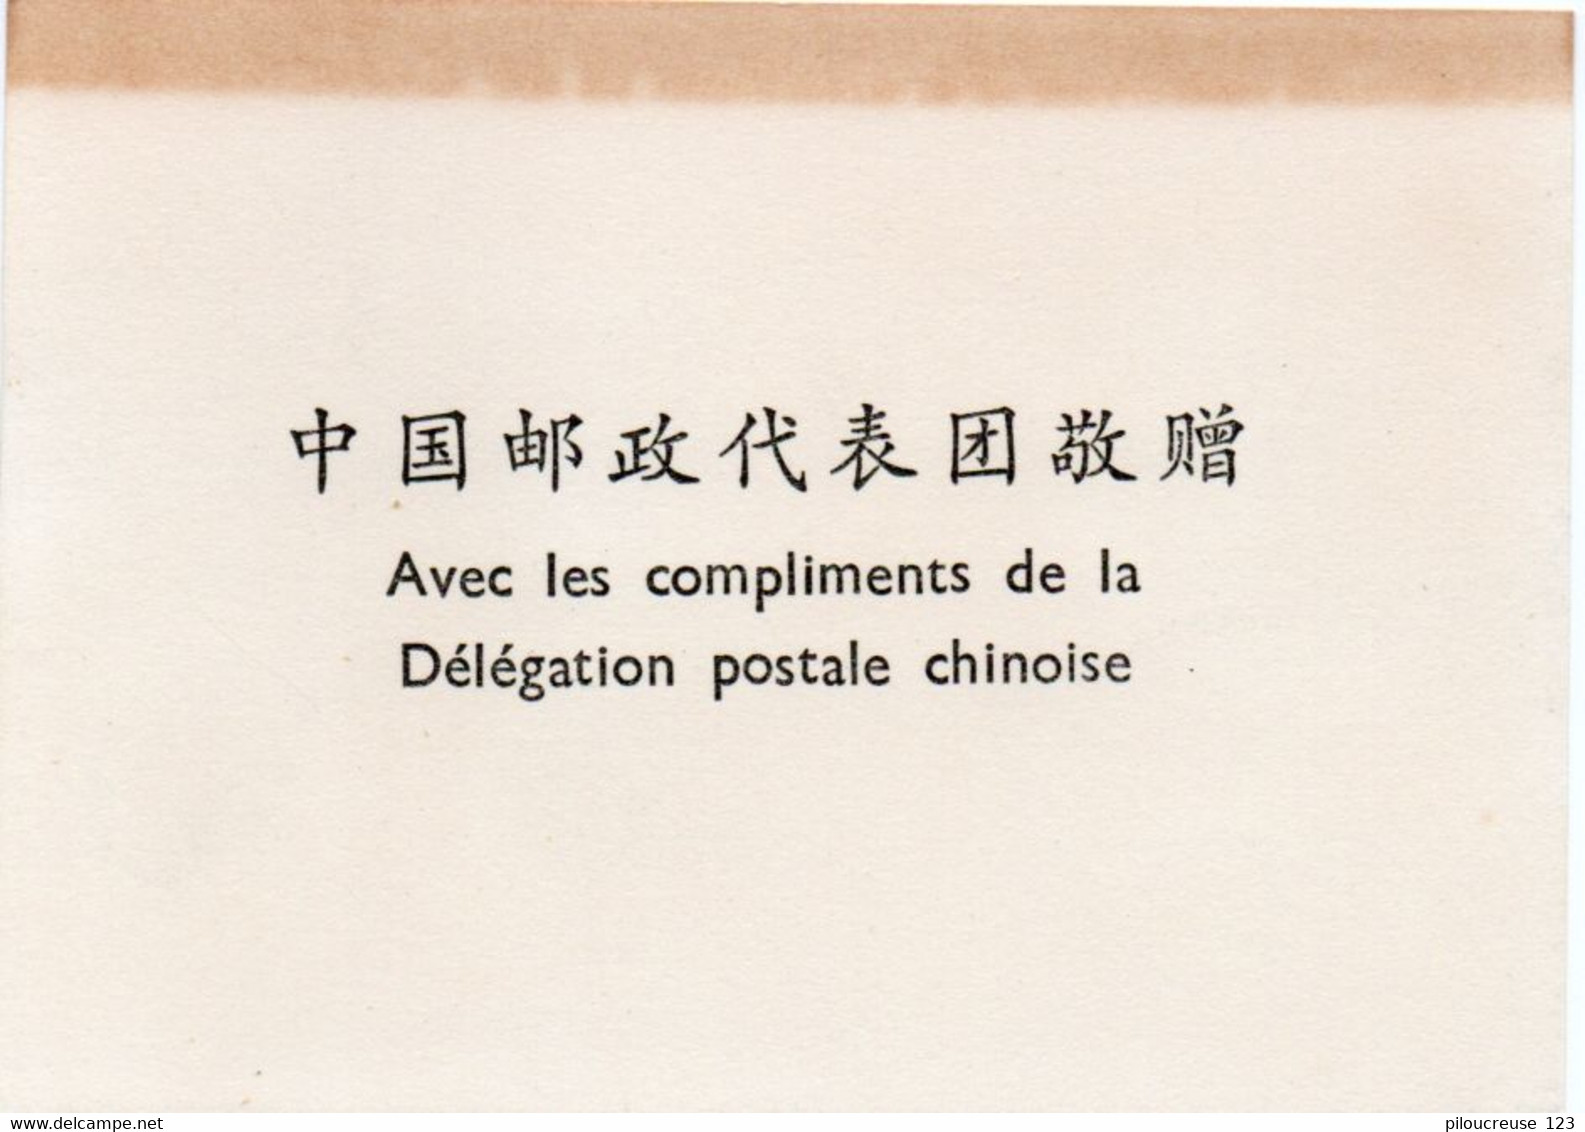 ASIE - CHINE - " 1 album timbres de Chine ** -  ( album offert par la Délégation Postale Chinoise)